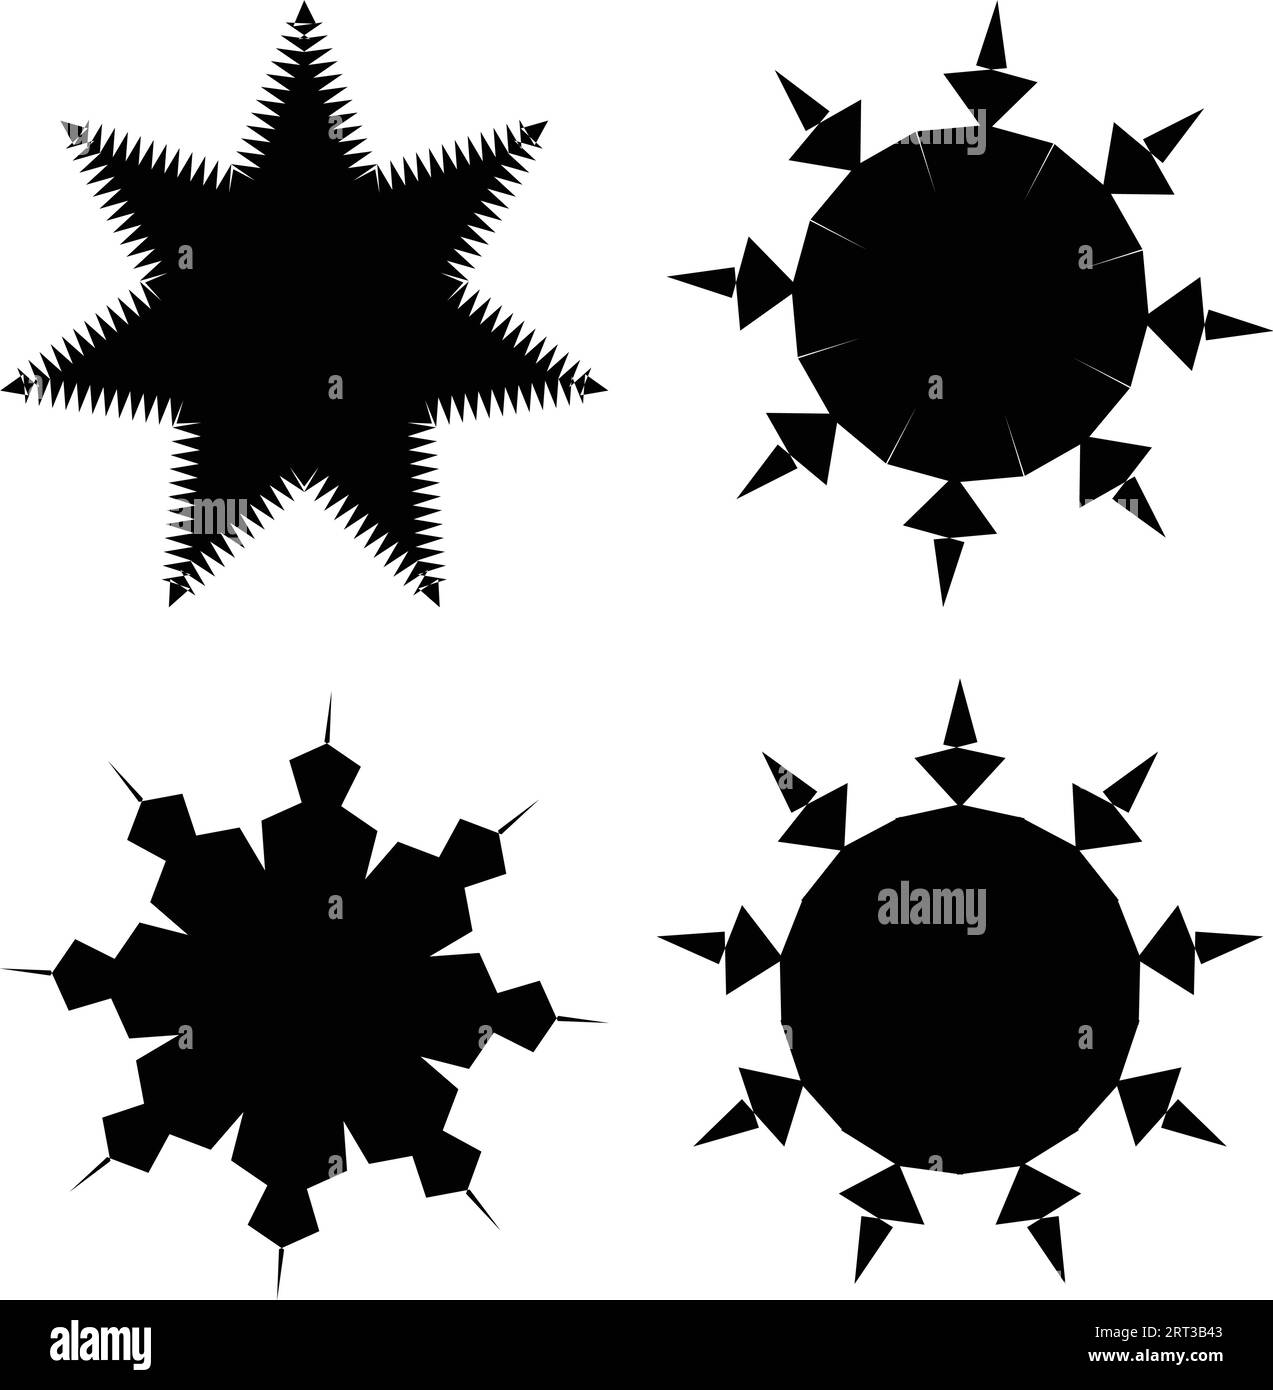 Verschiedene Sterne: Schwarze Farbelemente für Weihnachtssterne, Festivalfeiern, Web- oder Spieldesign und App-Symbole. Vektor-Grundformen. Retro-Sterne. Stock Vektor